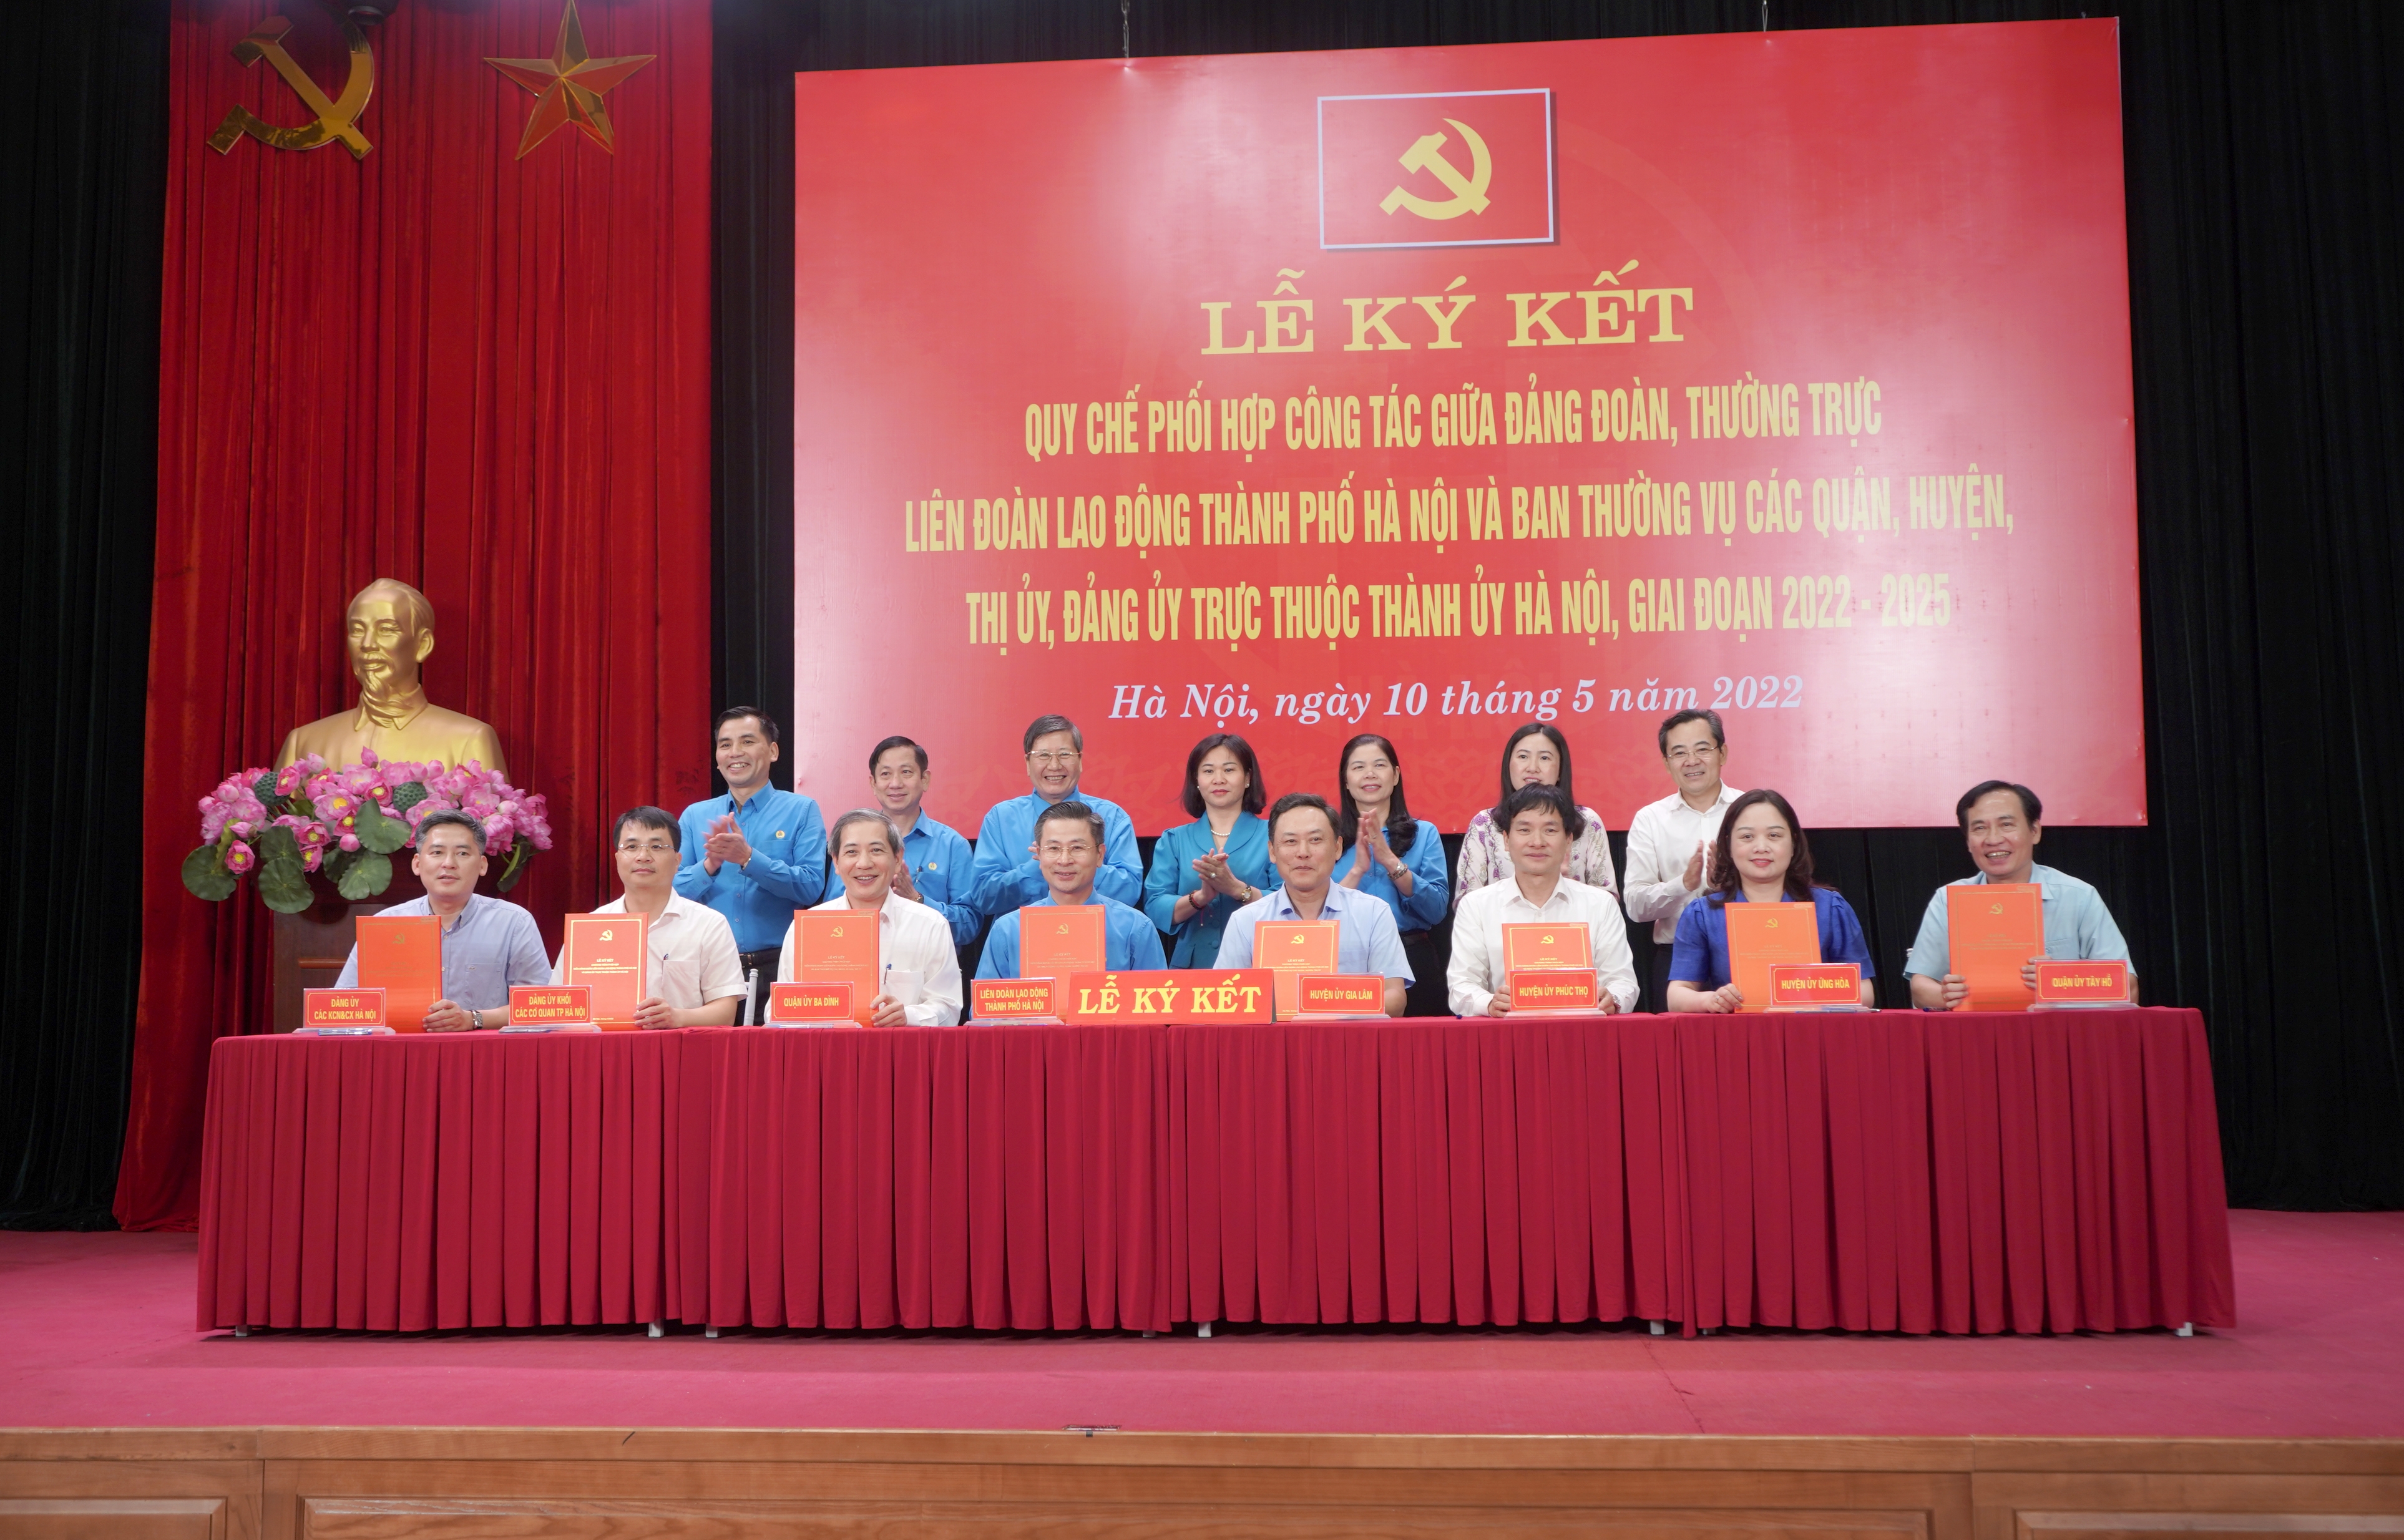 Đảng đoàn, Thường trực LĐLĐ Thành phố ký kết Quy chế phối hợp công tác với các Quận, Huyện, Thị ủy, Đảng ủy trực thuộc Thành ủy Hà Nội